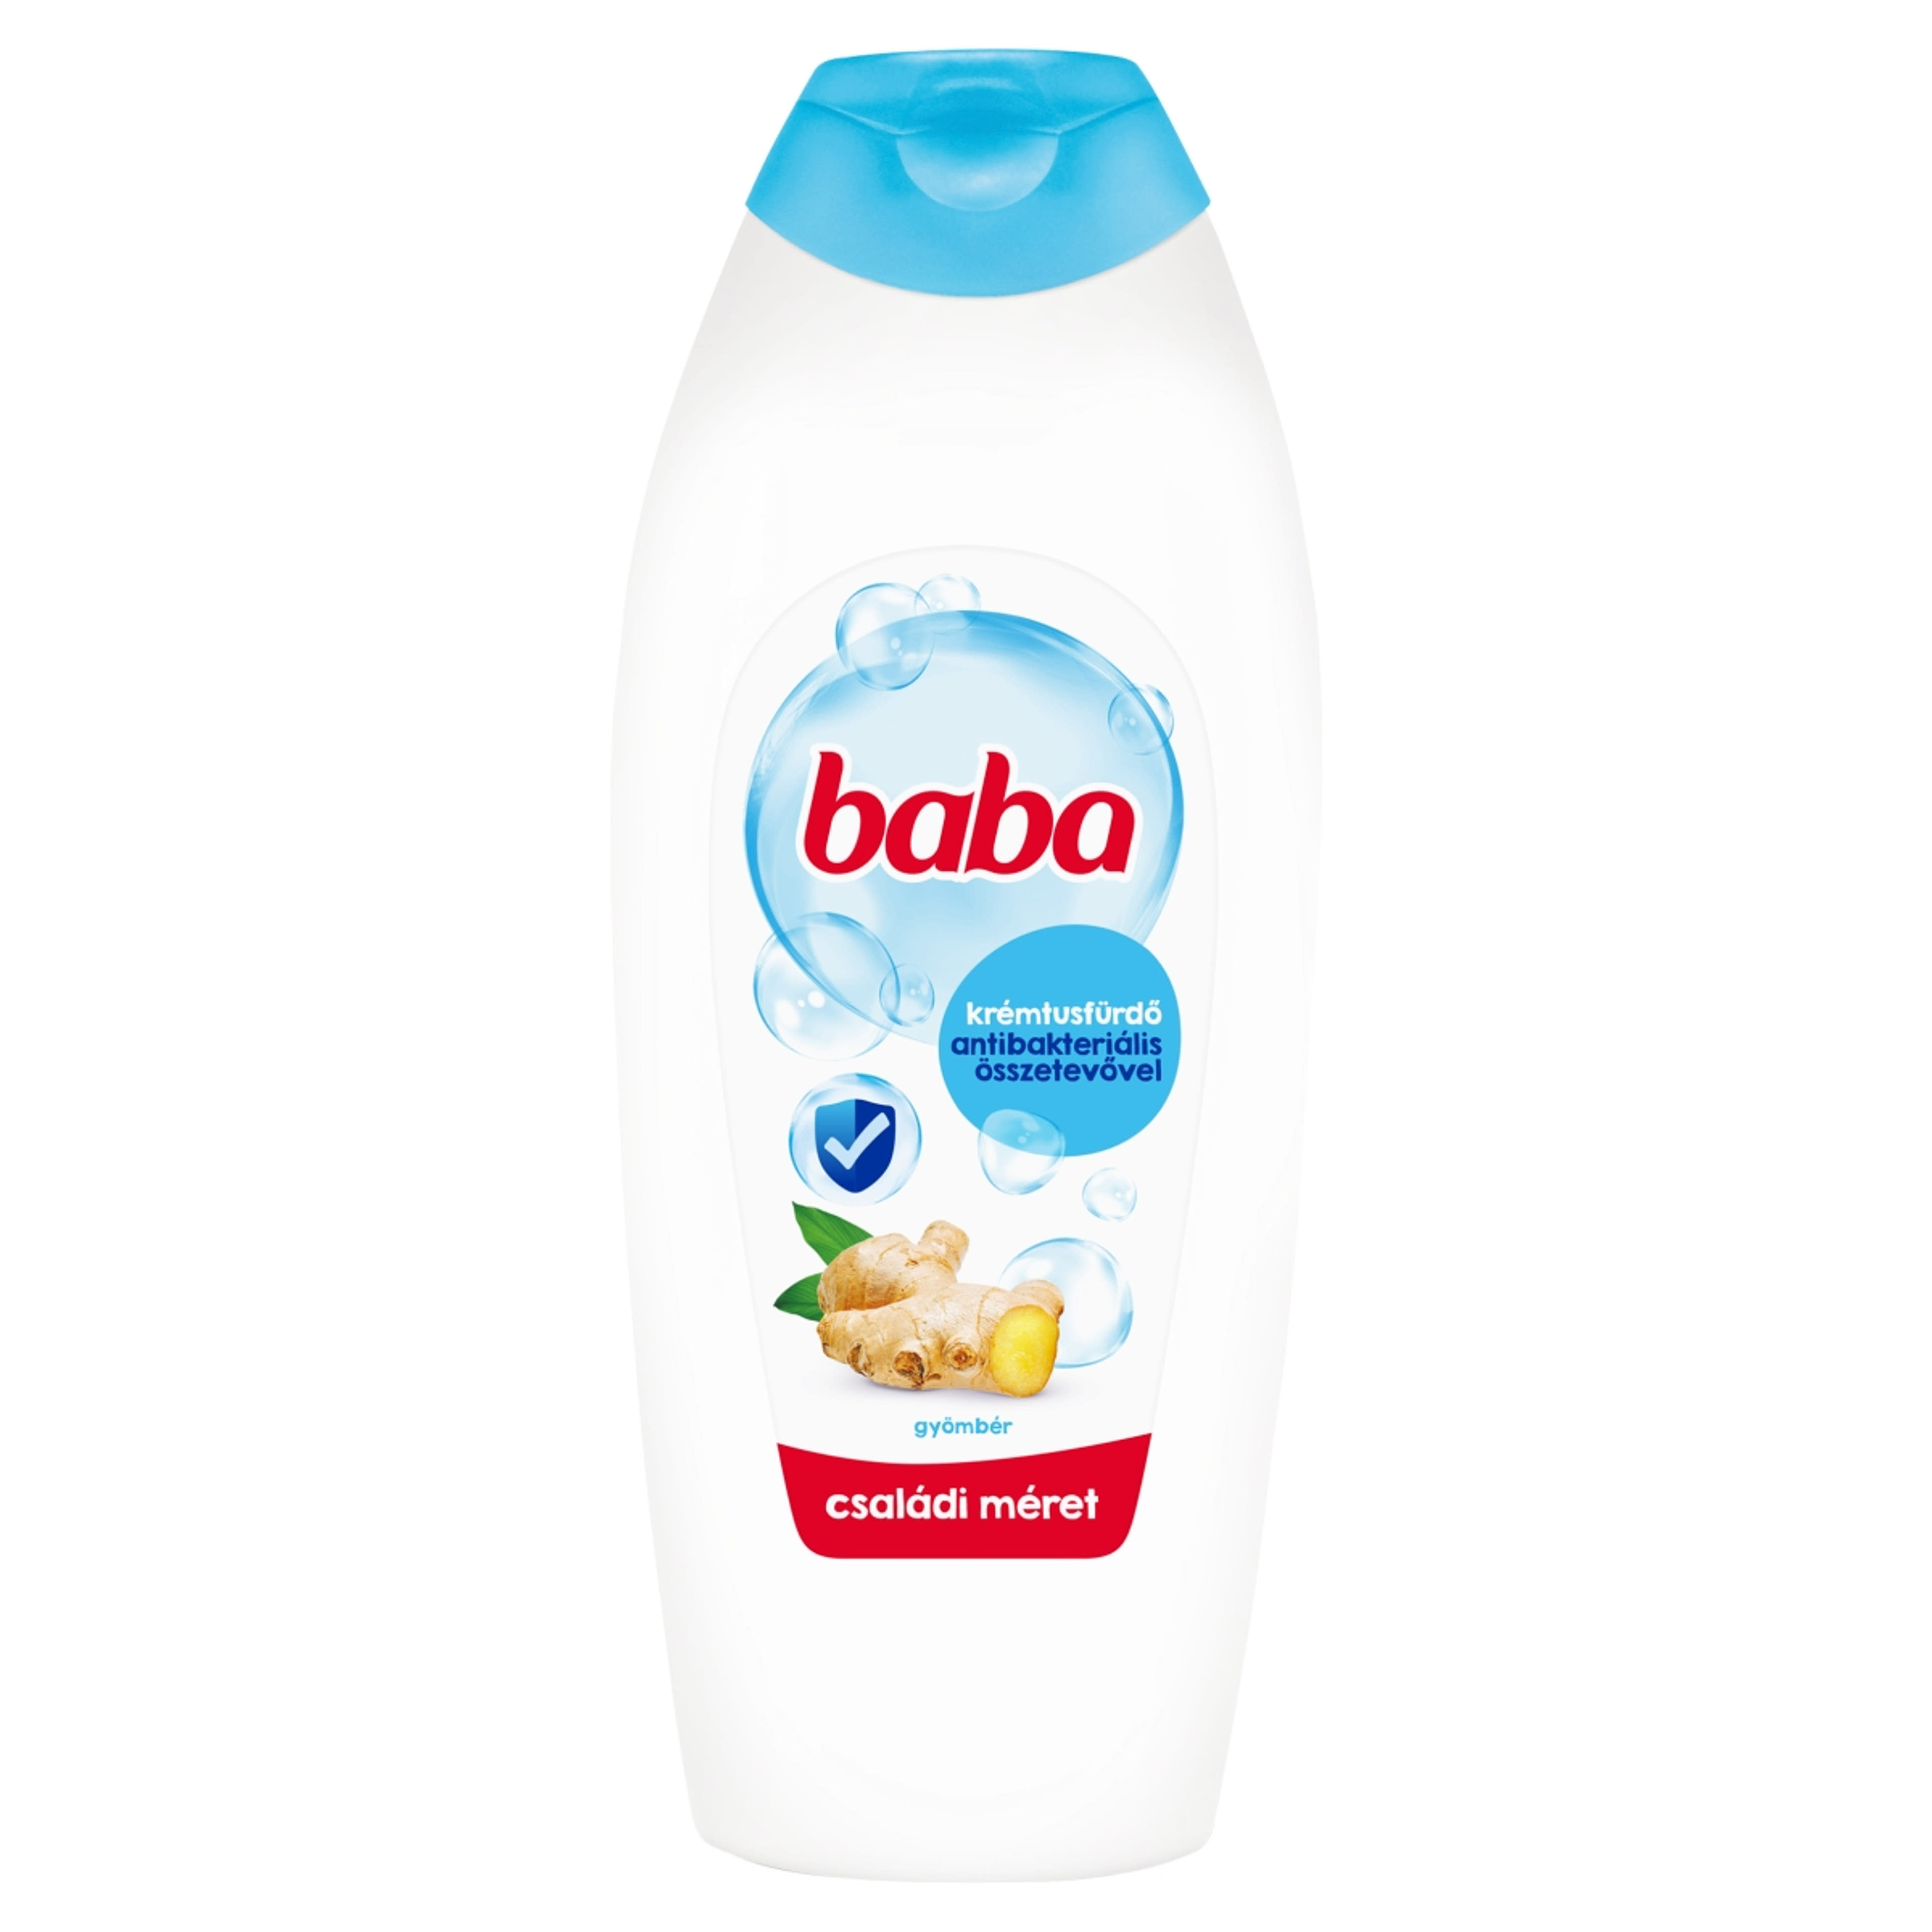 Baba krémtusfürdő antibakteriális összetevővel - 750 ml-1